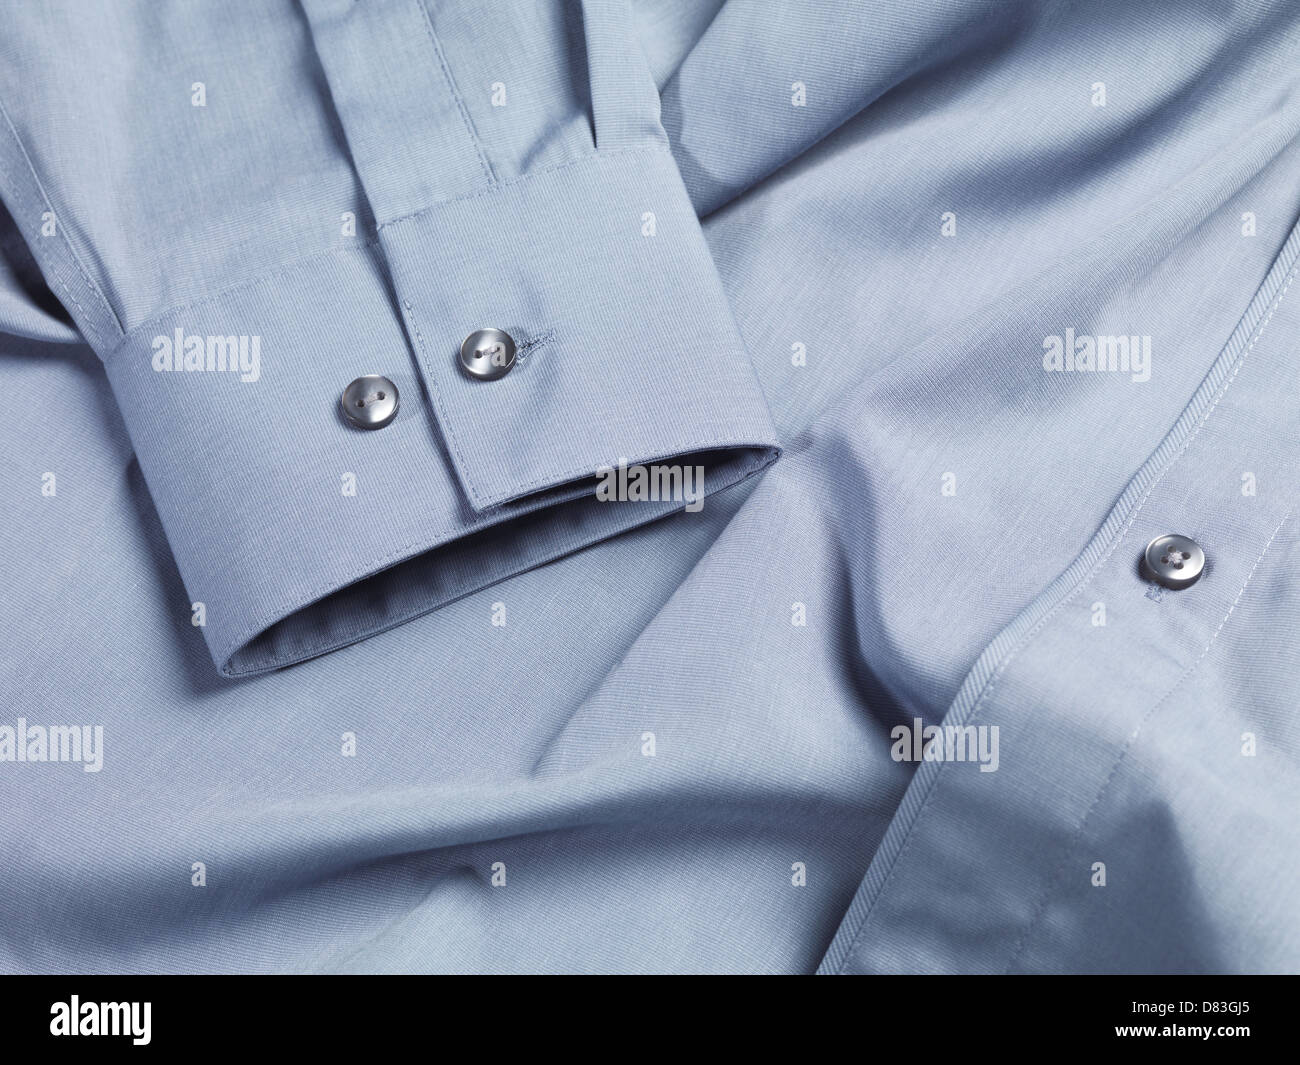 Closeup of a mens dress shirt Stock Photo - Alamy